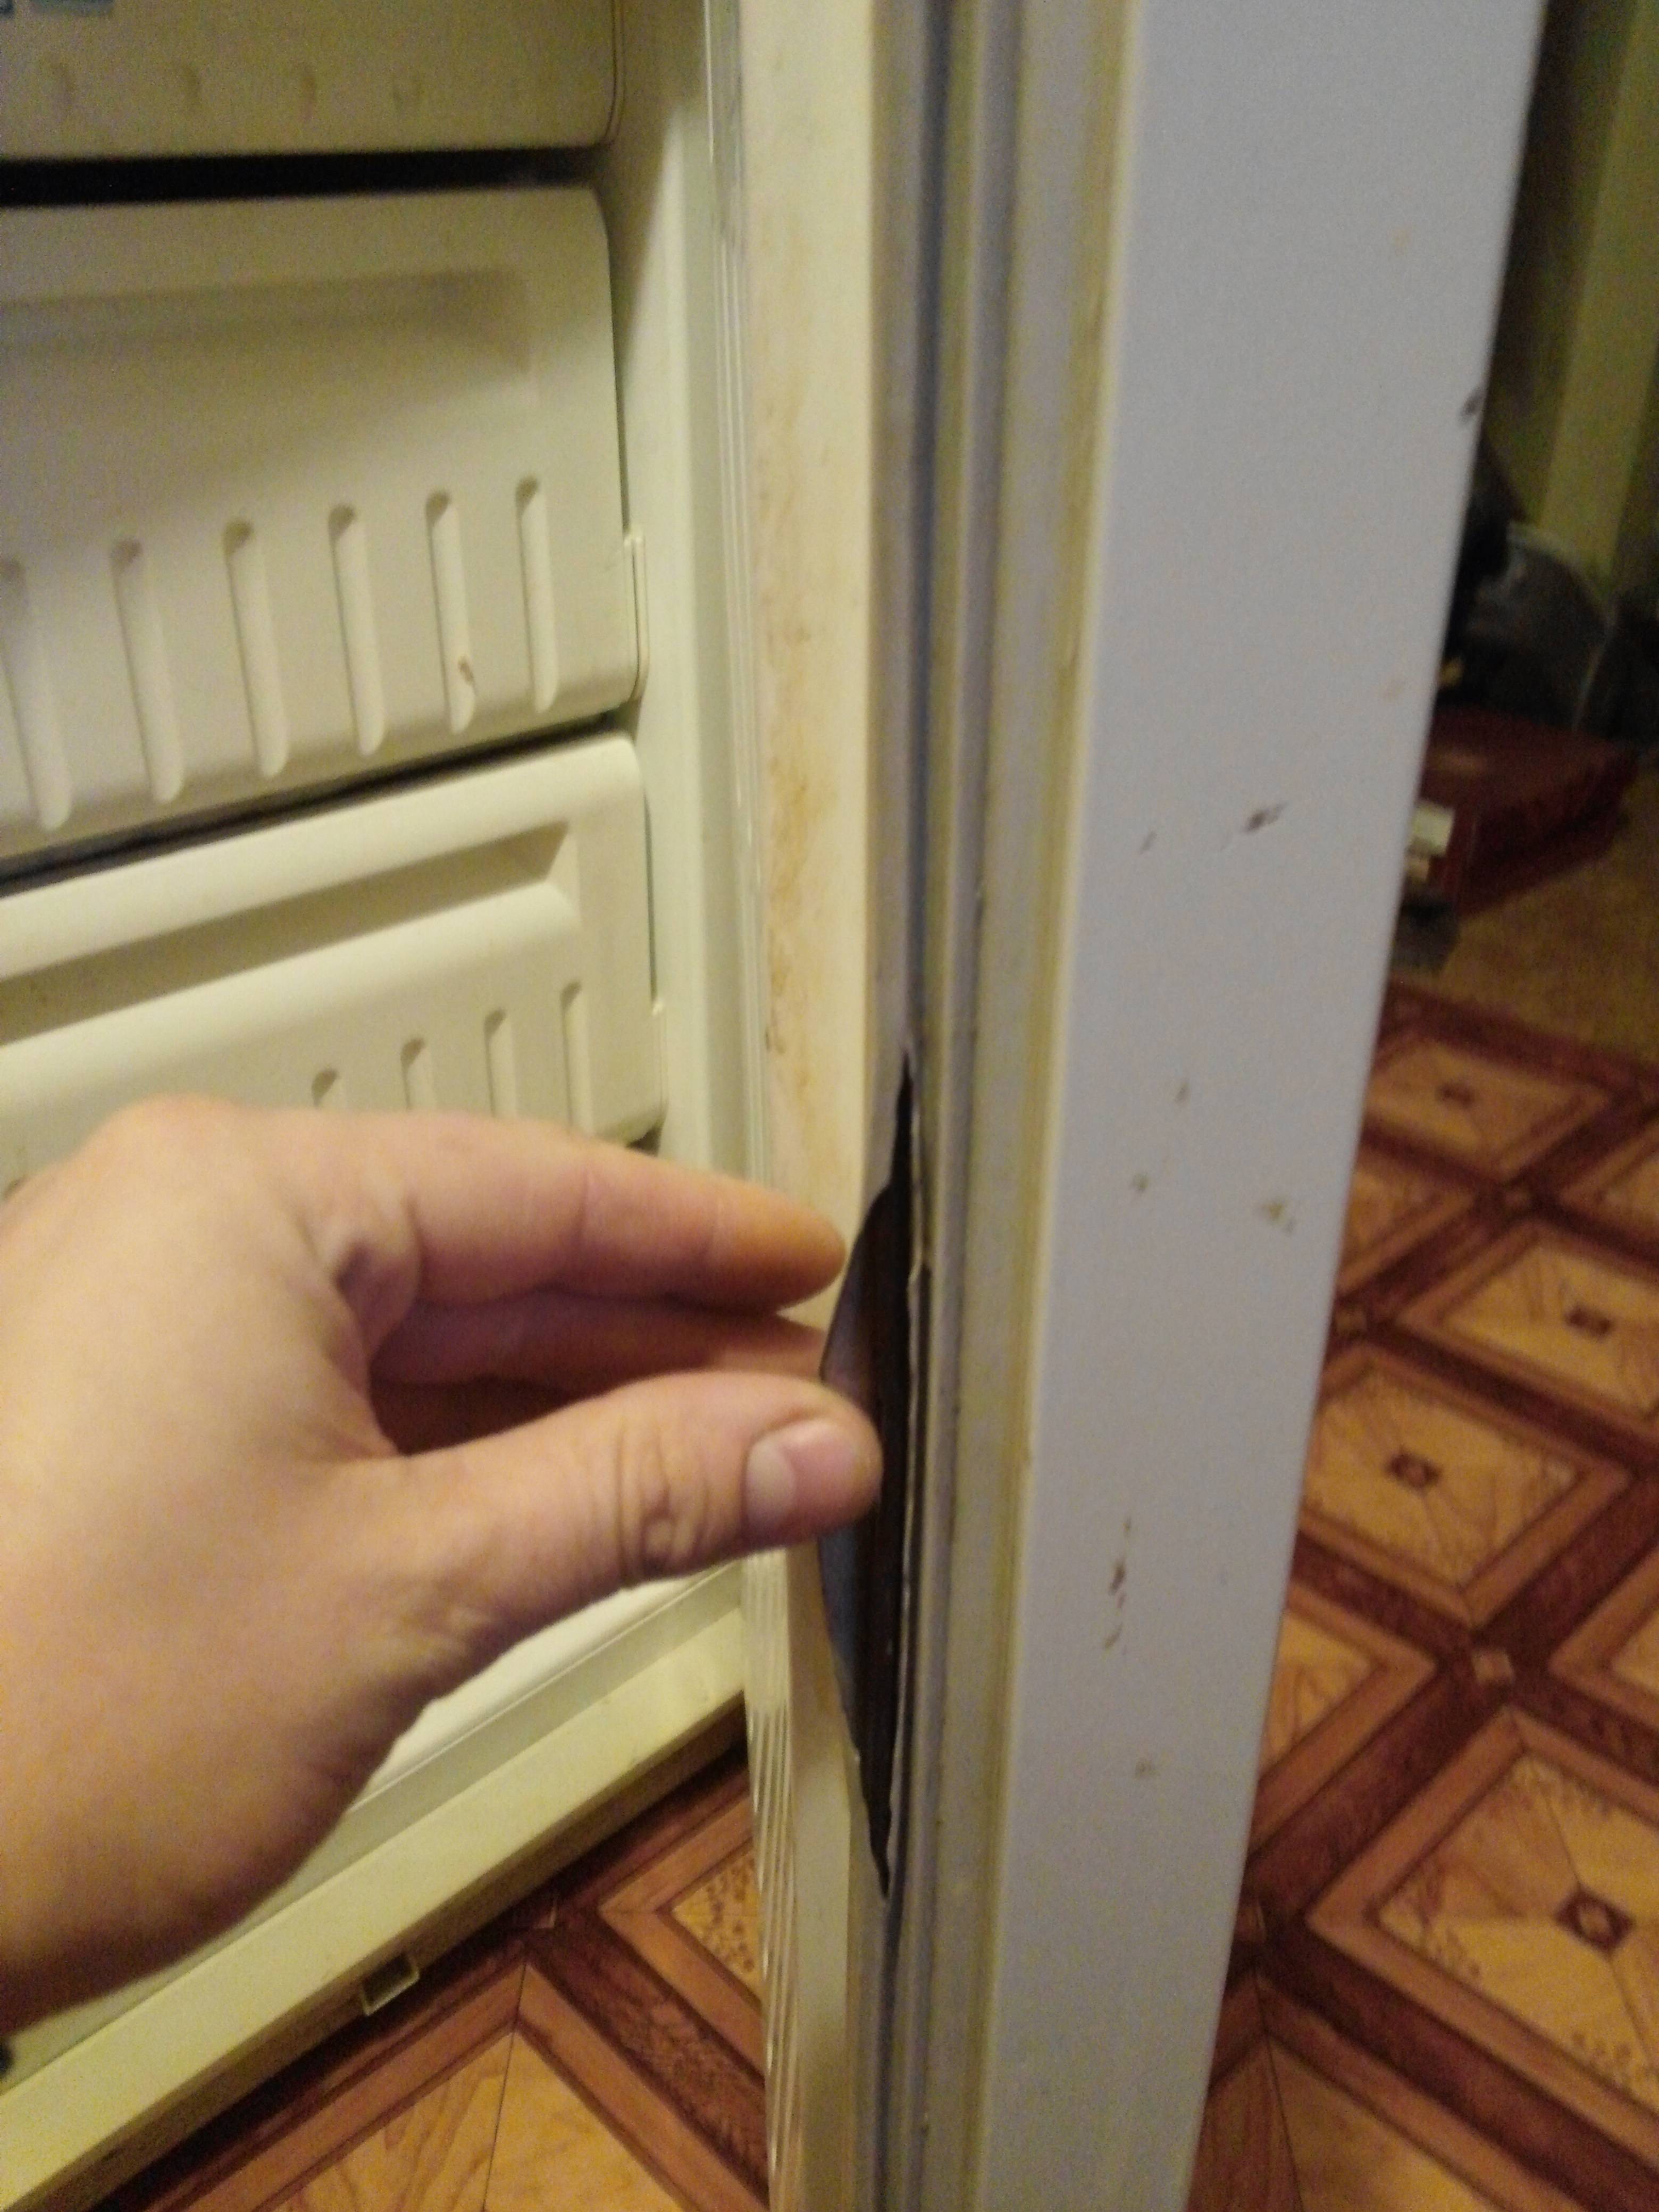 Замена уплотнителя в холодильнике: ремонт уплотнительной резинки на двери, как поменять своими руками, установить, можно ли починить